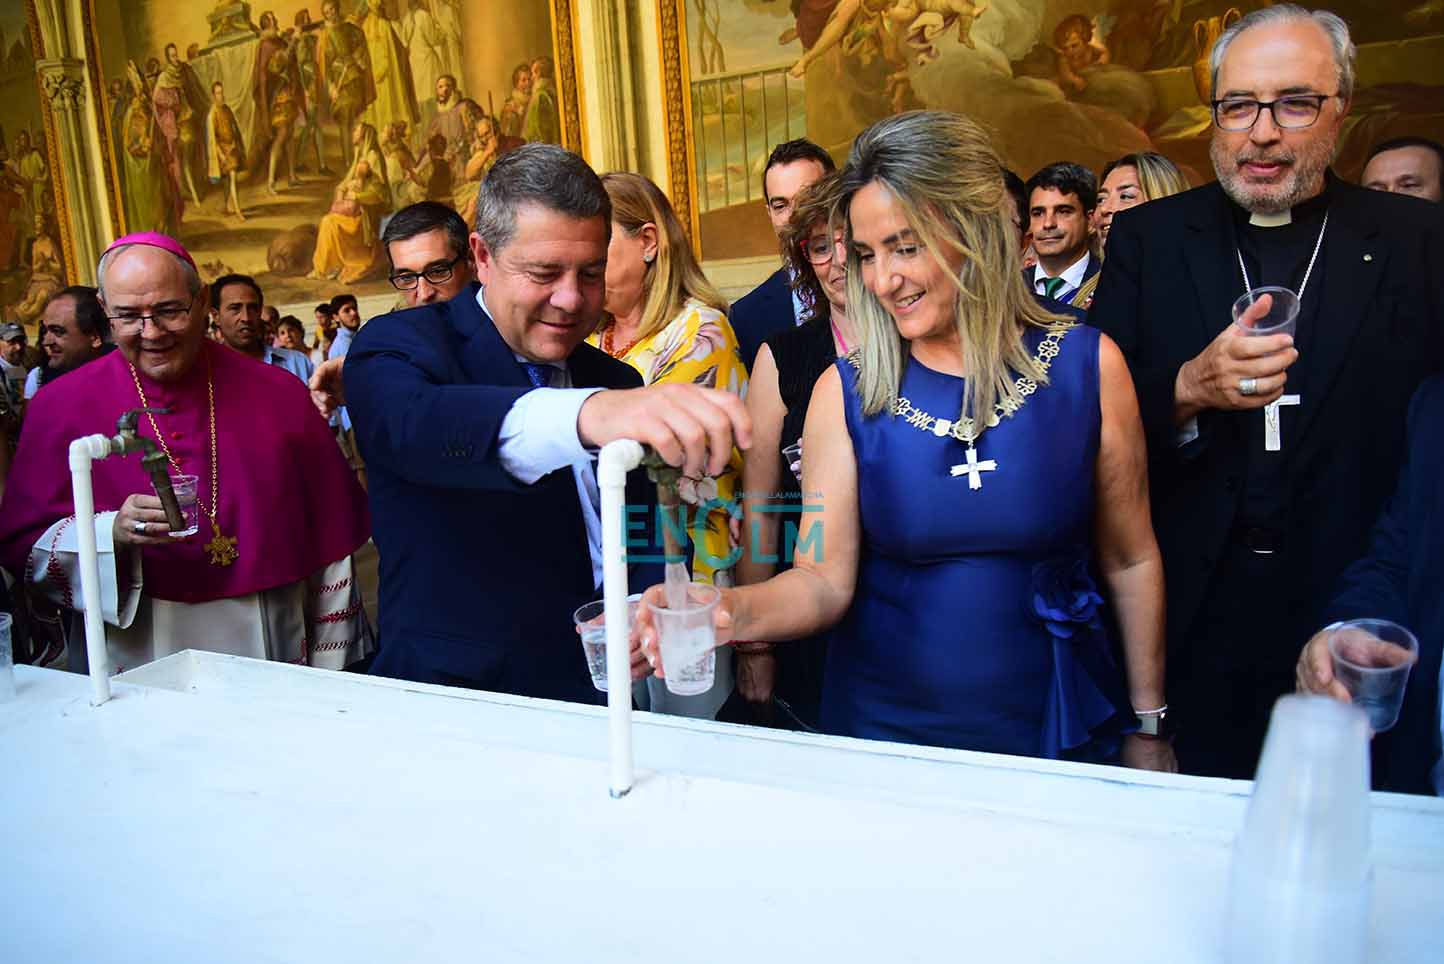 Page, junto a la alcaldesa de Toledo, Milagros Tolón, bebiendo el agua (no de los botijos y sí en vasos) en la Catedral de Toledo. Foto: Rebeca Arango.